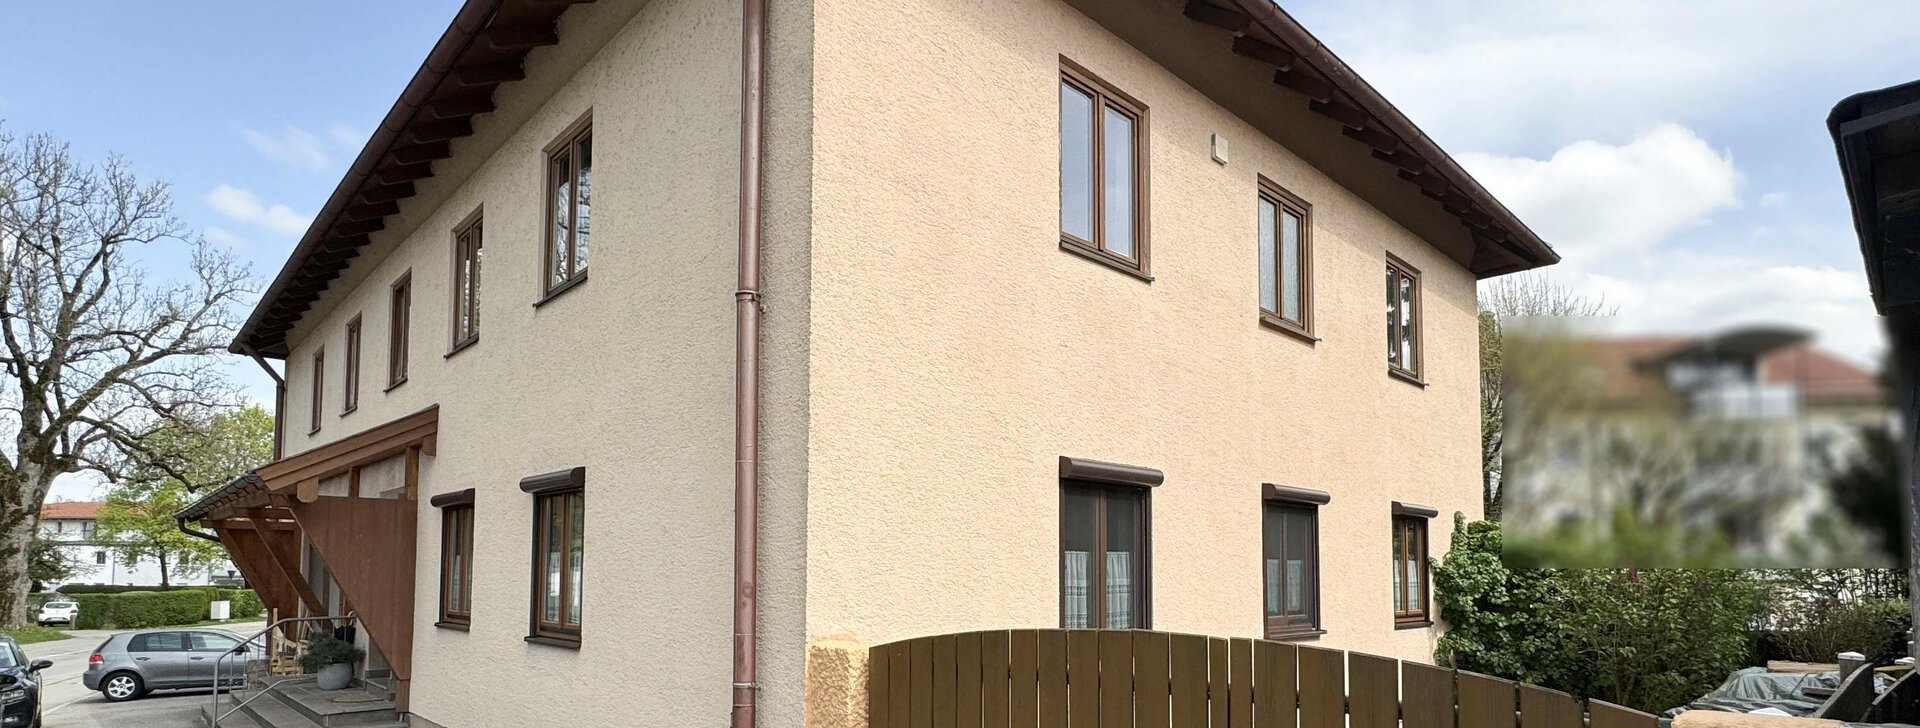 Außenansicht, 2-Zimmer-Wohnung in Traunstein, Immobilie kaufen, Traunstein | © HausBauHaus GmbH 